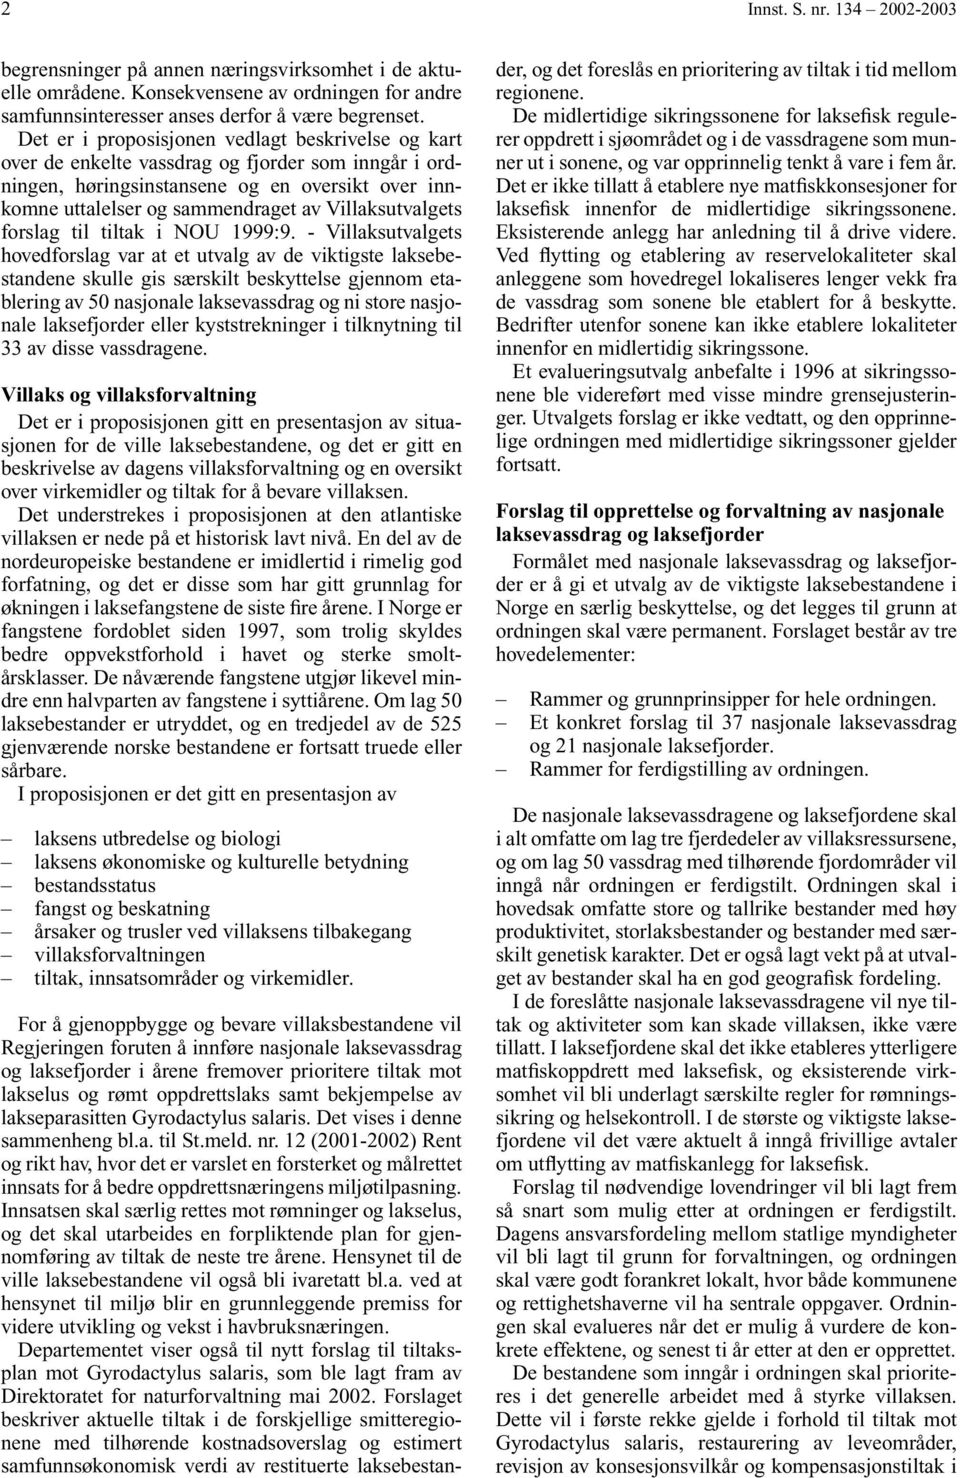 Villaksutvalgets forslag til tiltak i NOU 1999:9.